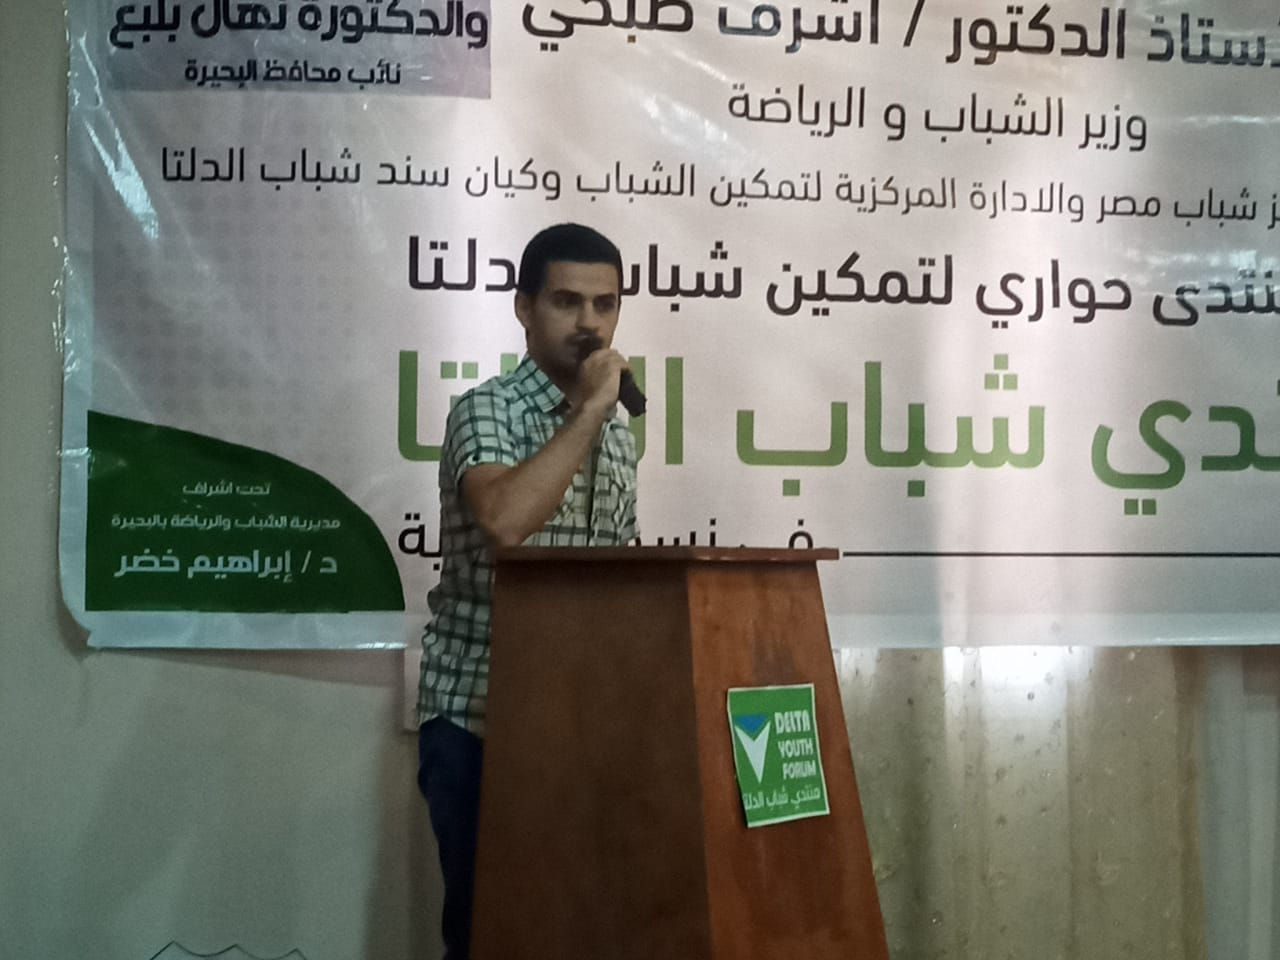 منتدى شباب الدلتا يطالب بالمشاركة الإيجابية فى الانتخابات (1)